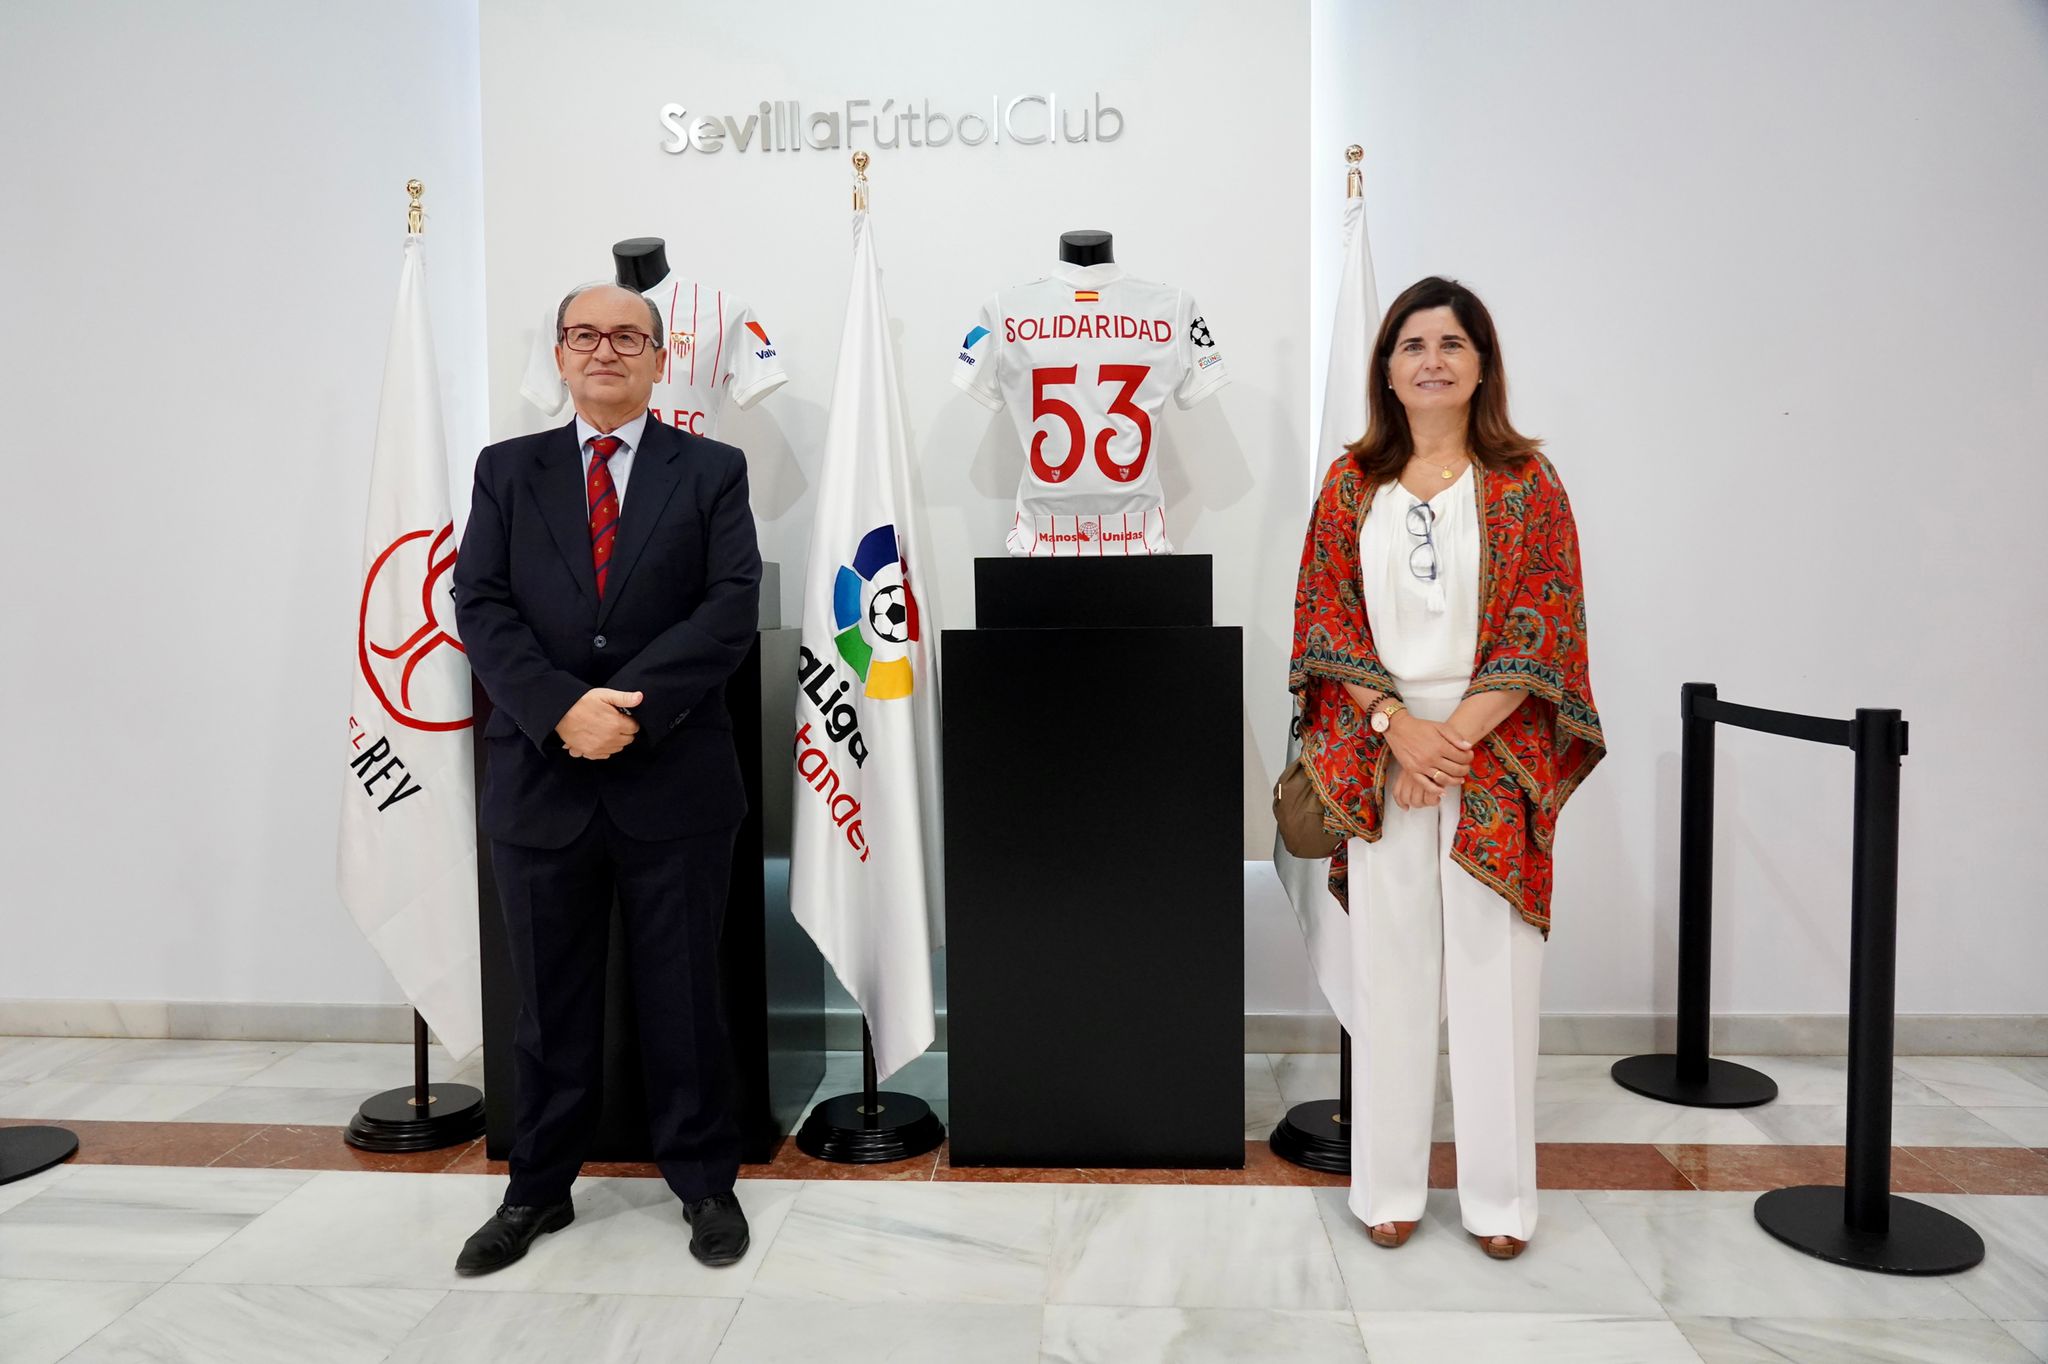 José Castro and María Albandea, the Presidents of Sevilla FC and Manos Unidas Sevilla